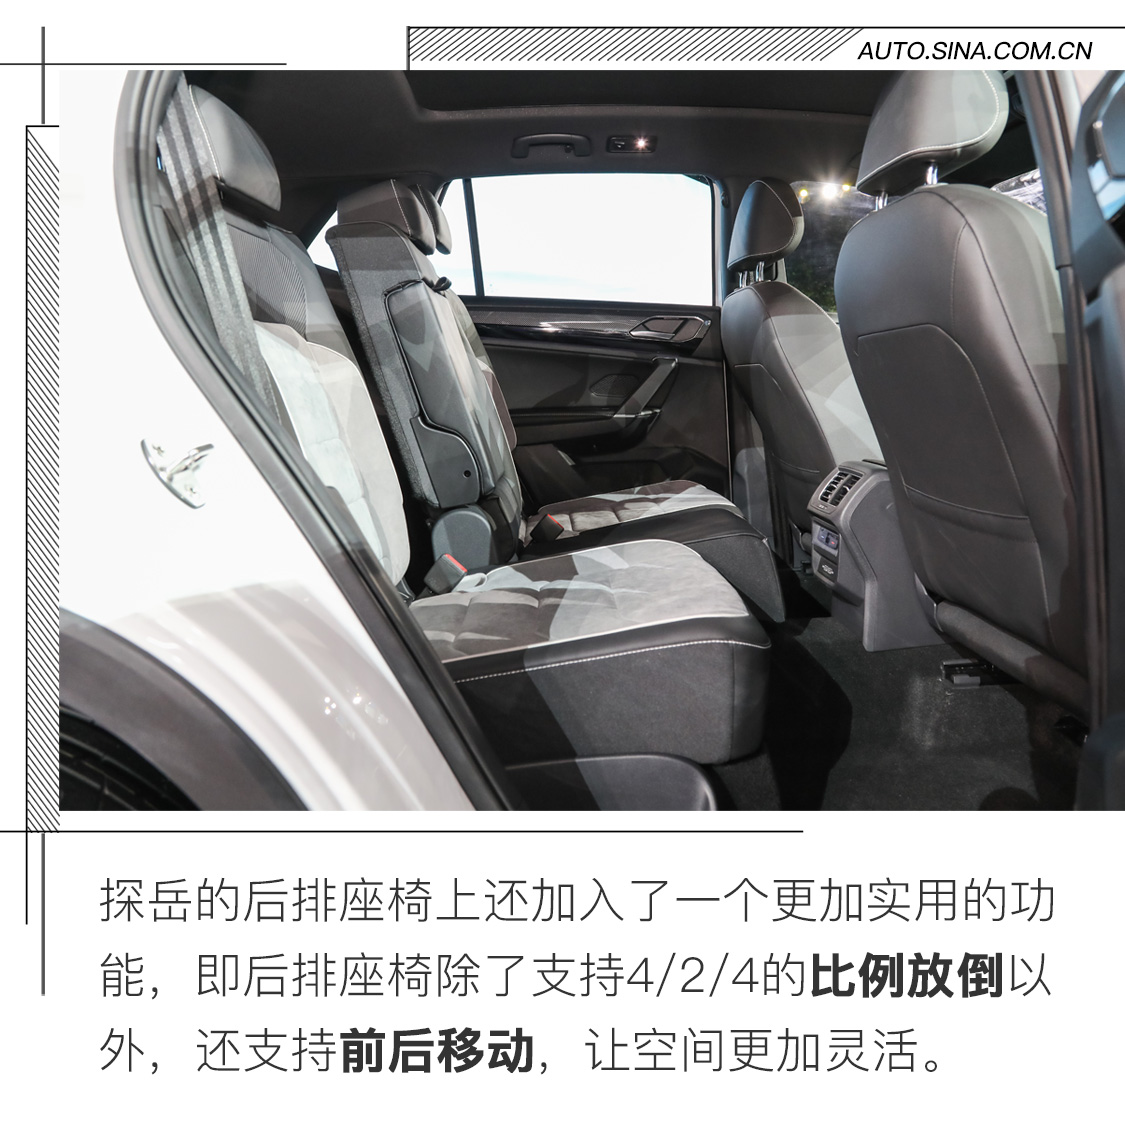 实拍一汽-大众全新SUV 探岳 10月22日上市